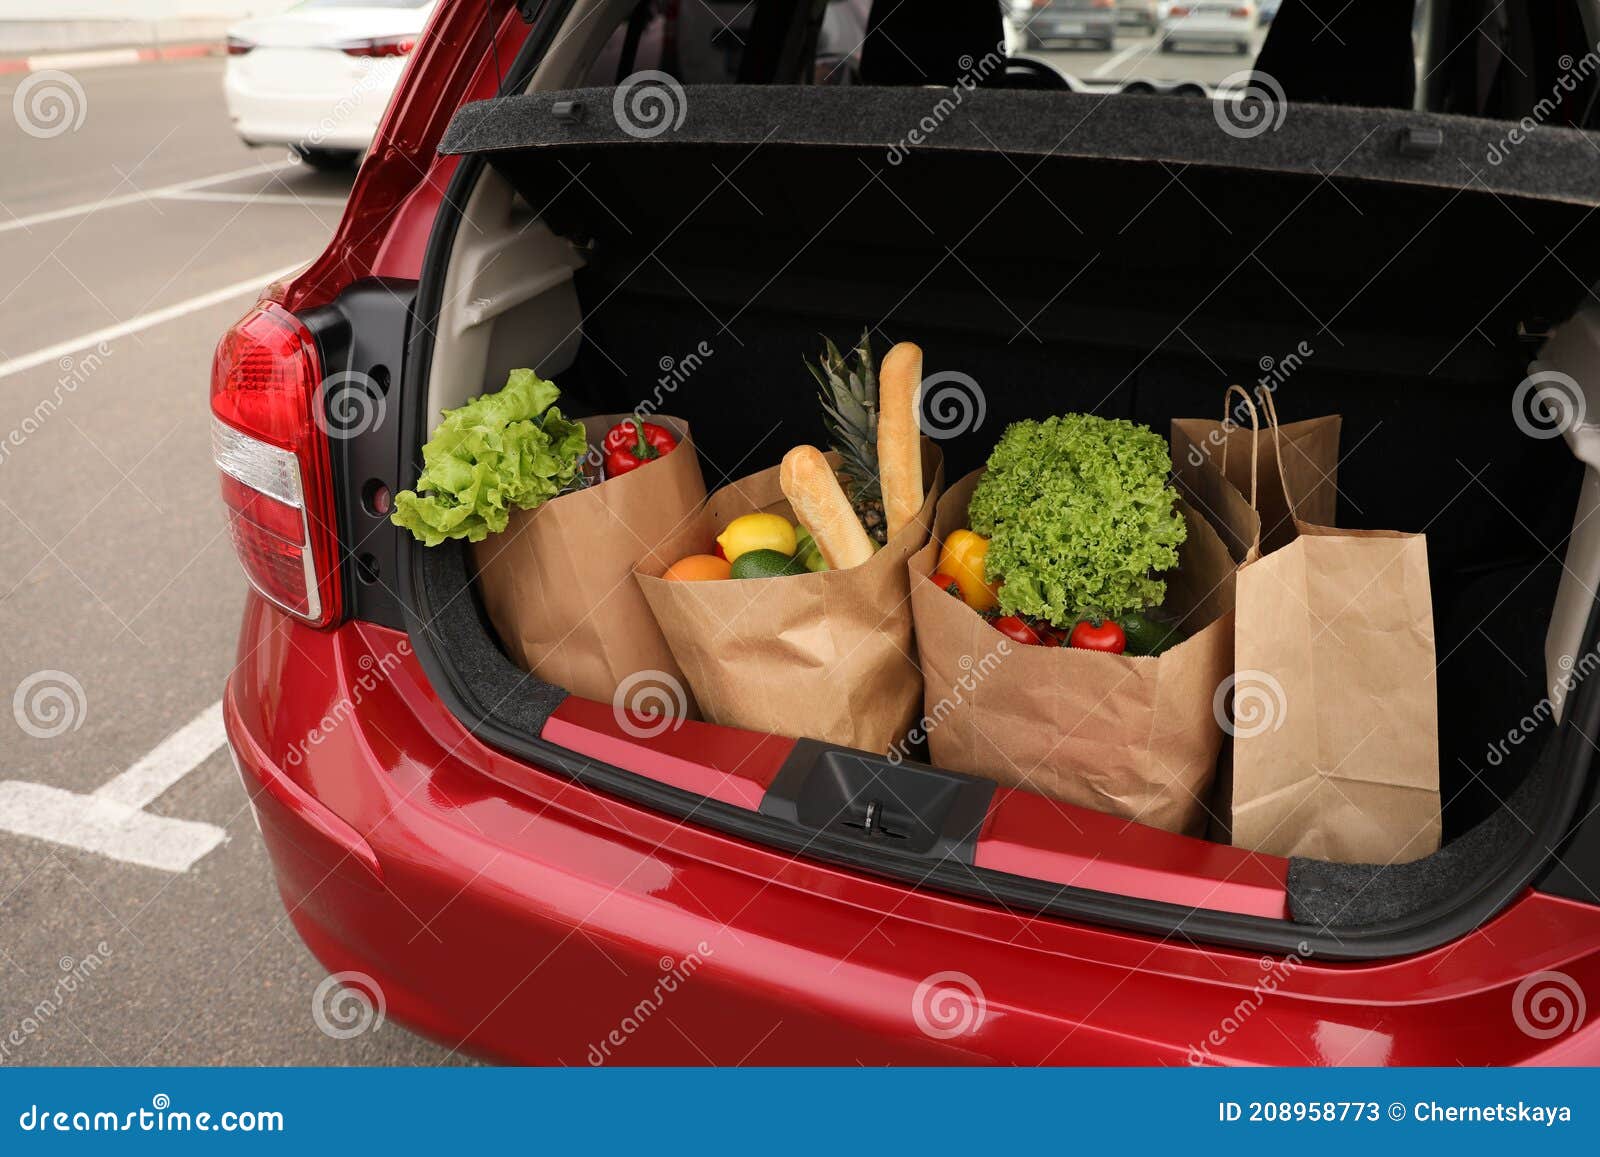 Borse Piene Di Generi Alimentari Nel Bagagliaio Dell'auto All'aperto  Immagine Stock - Immagine di lifestyle, prodotti: 208958773